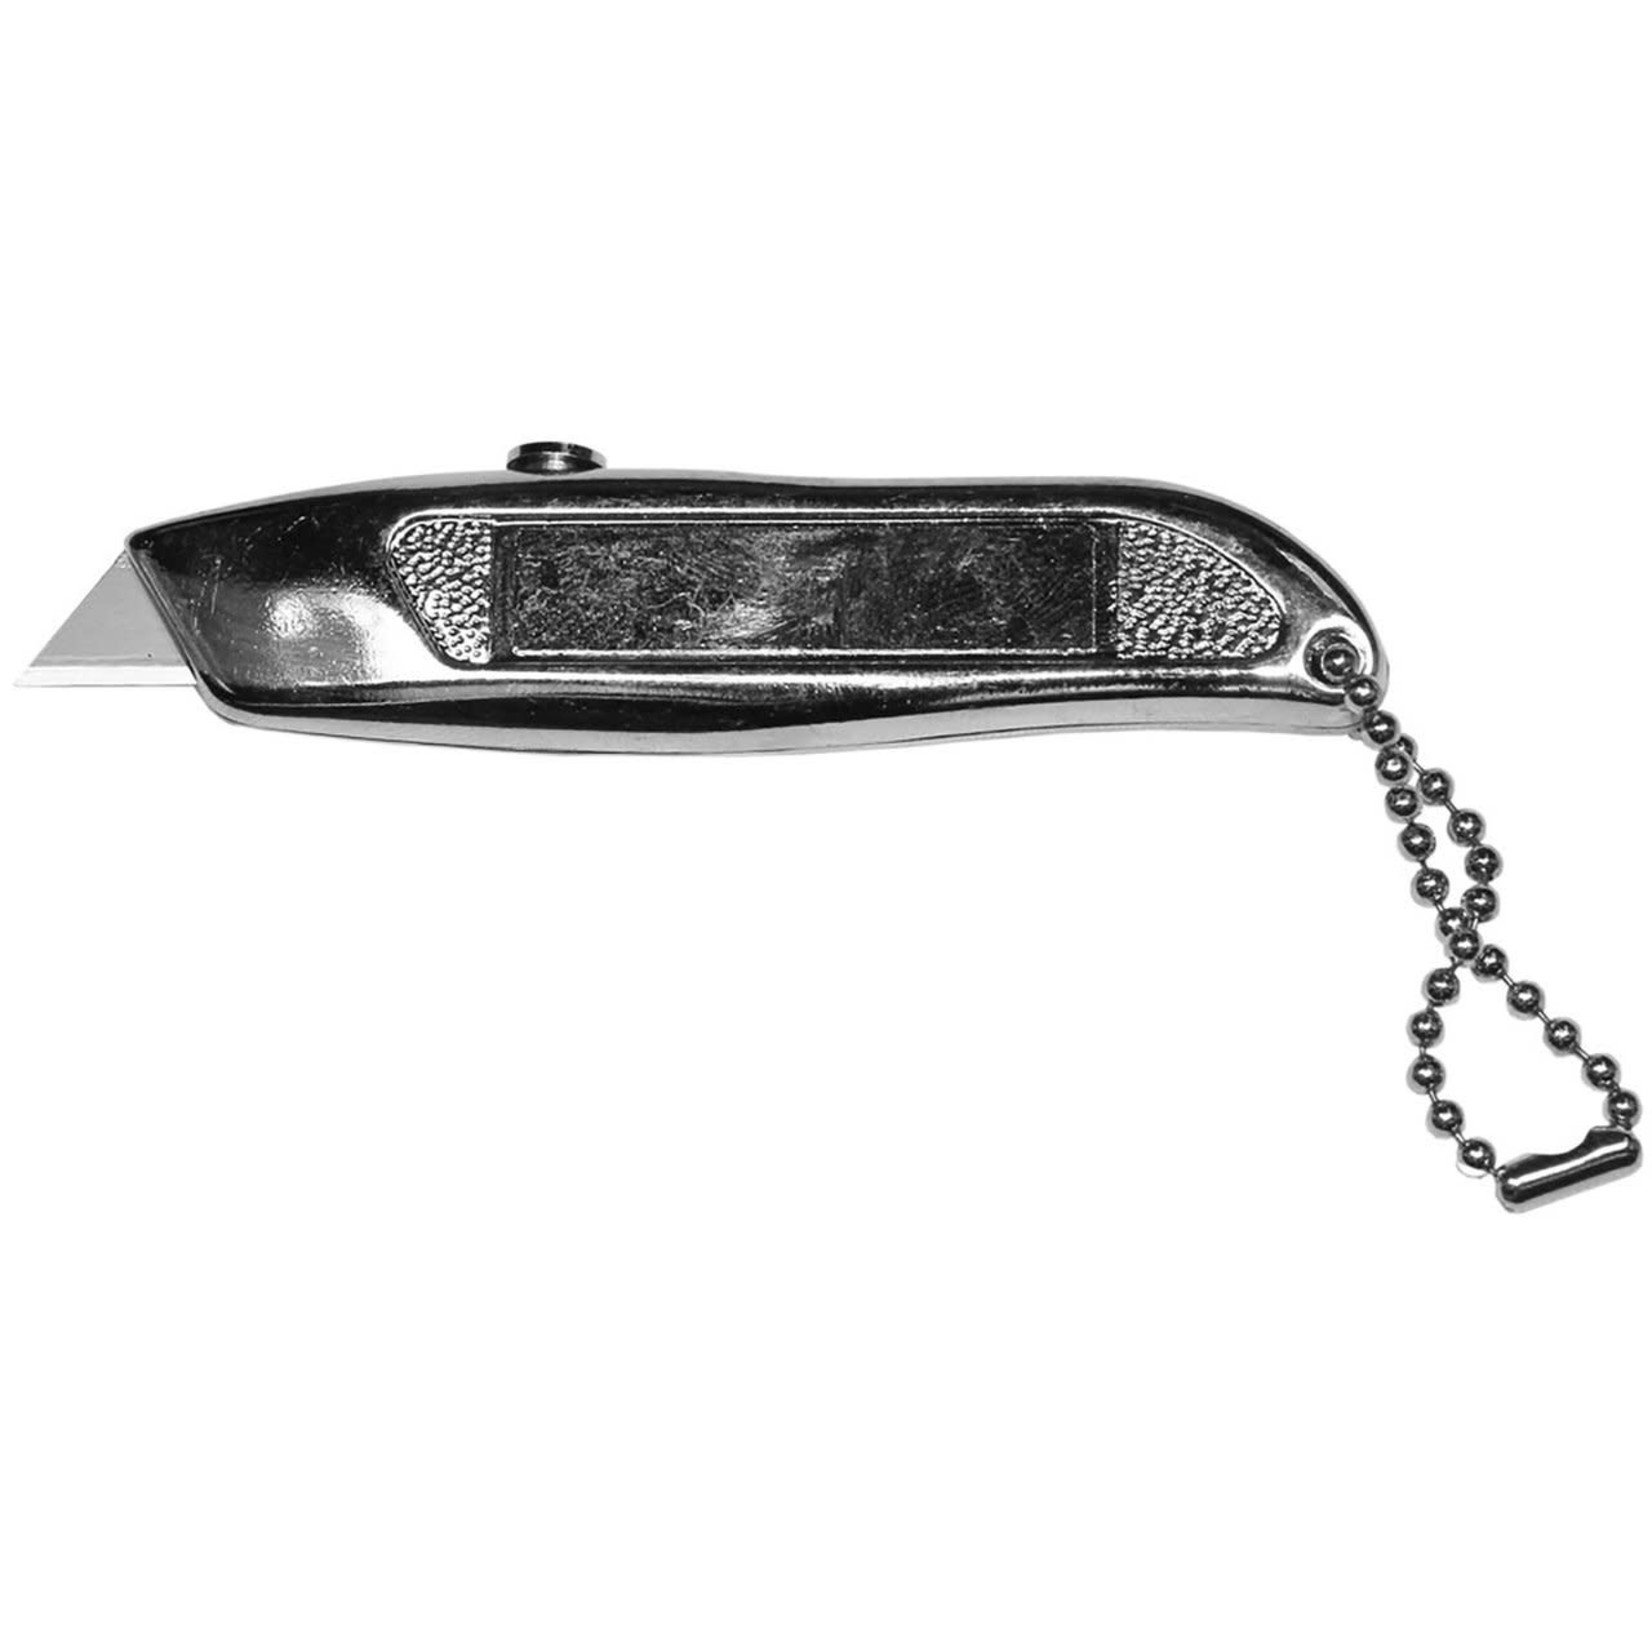 EXC16015 Retractable Mini Knife #15